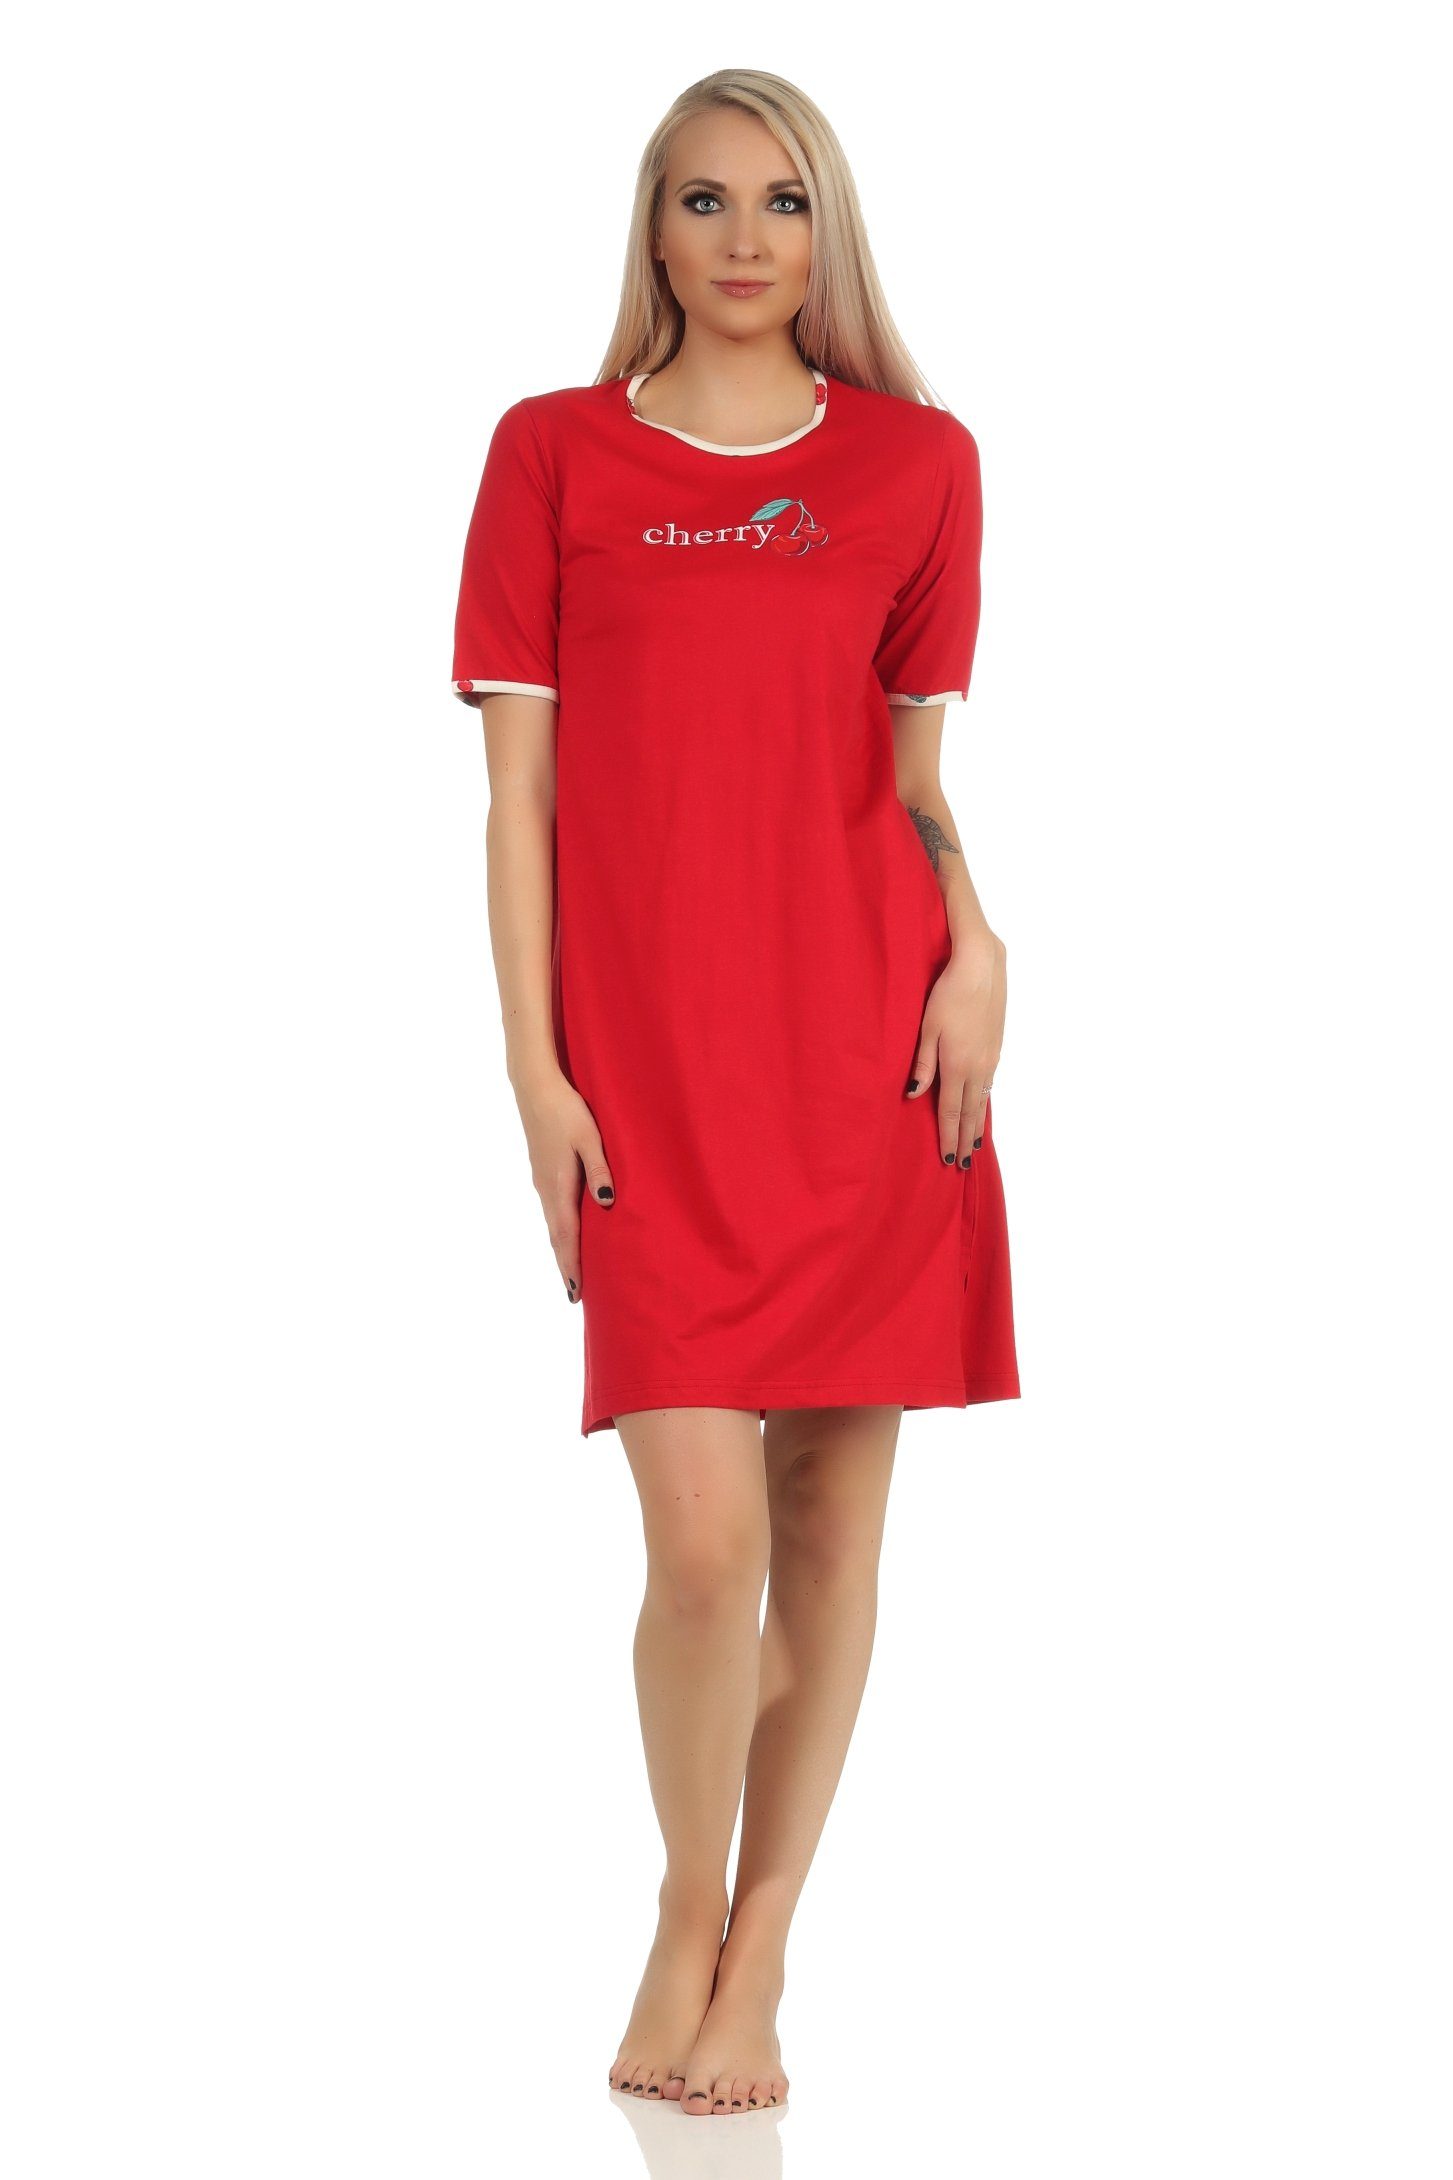 Normann Nachthemd Süsses kurzarm Damen Nachthemd mit Kirschen als Motiv – 112 535 rot